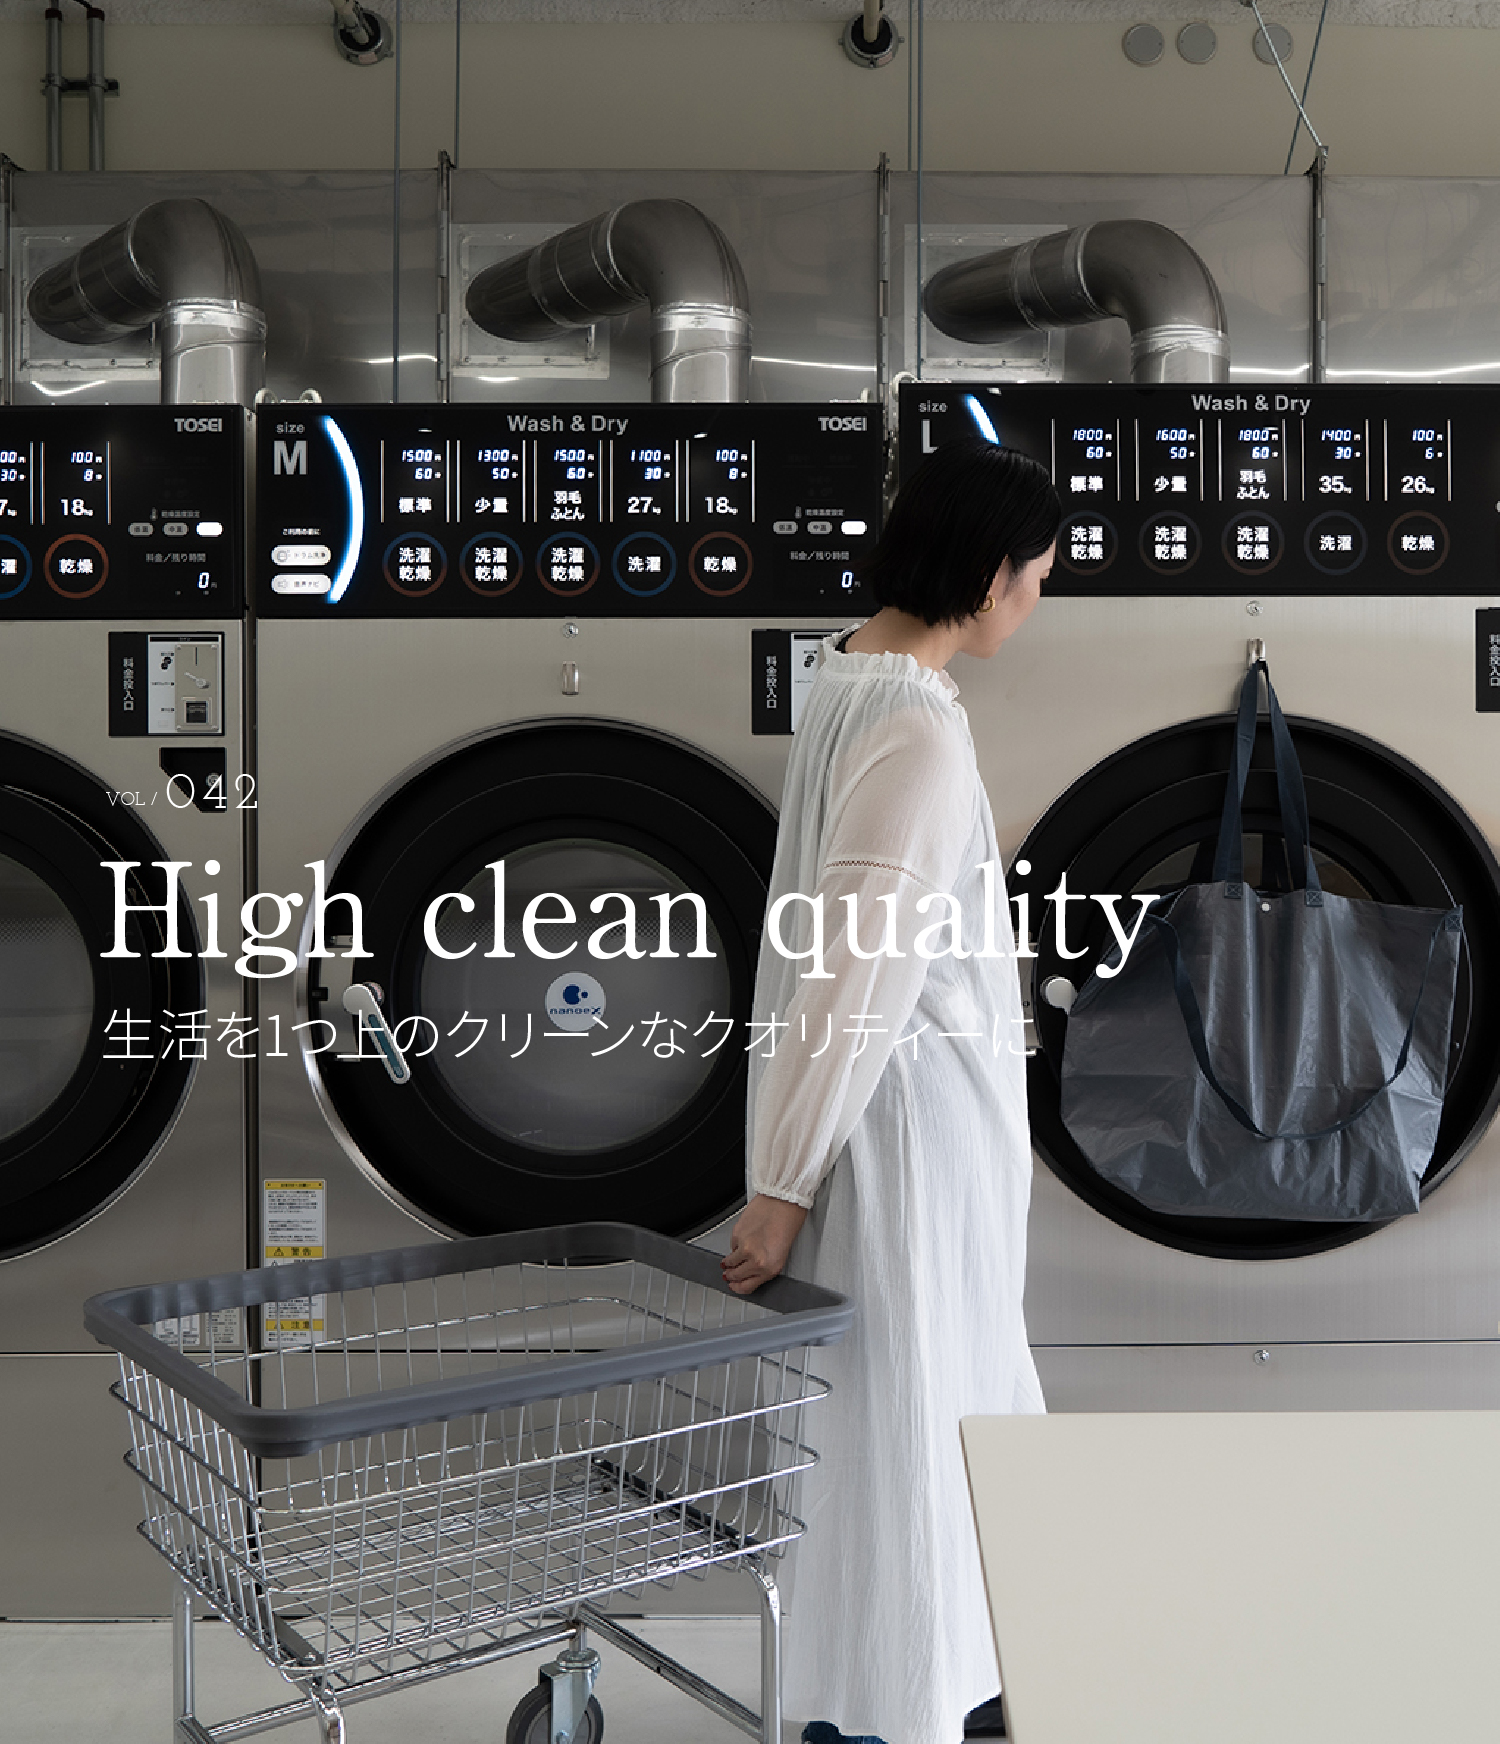 VOL / 042 High clean quality